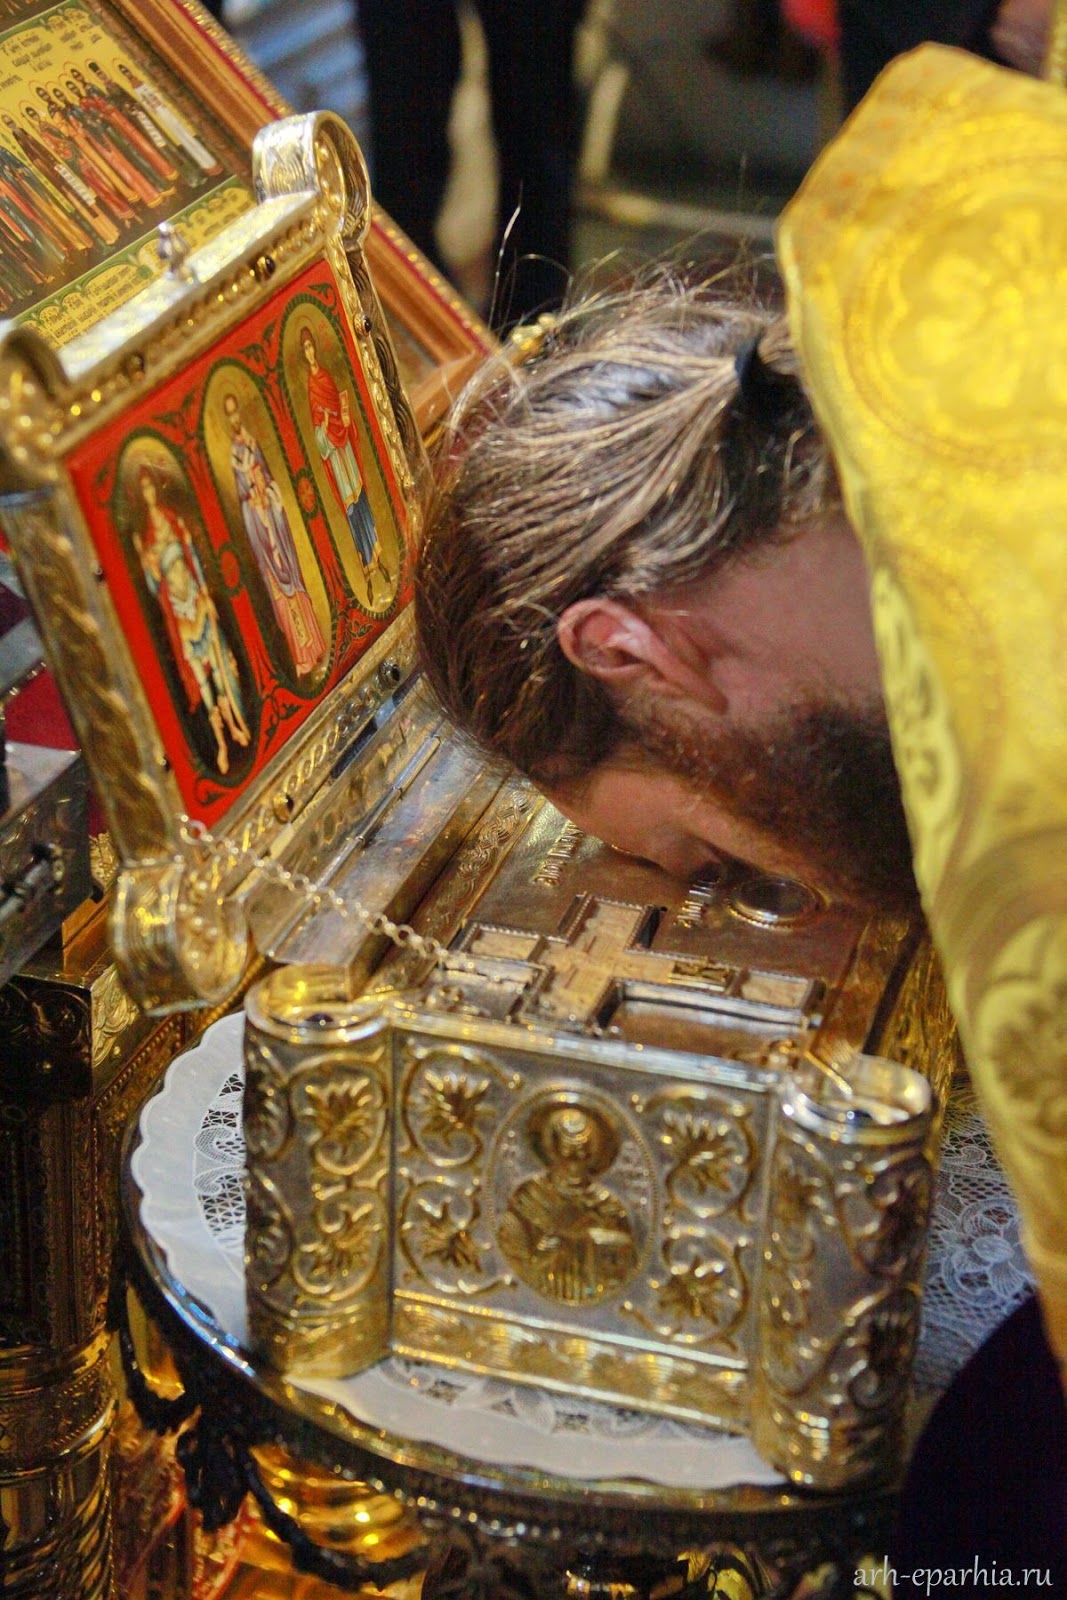 Ιερά κειμήλια από το Ιερό Παντοκρατορινό Κελλί Αγίου Γεωργίου Φανερωμένου (Άγιον 'Ορος) http://leipsanothiki.blogspot.be/